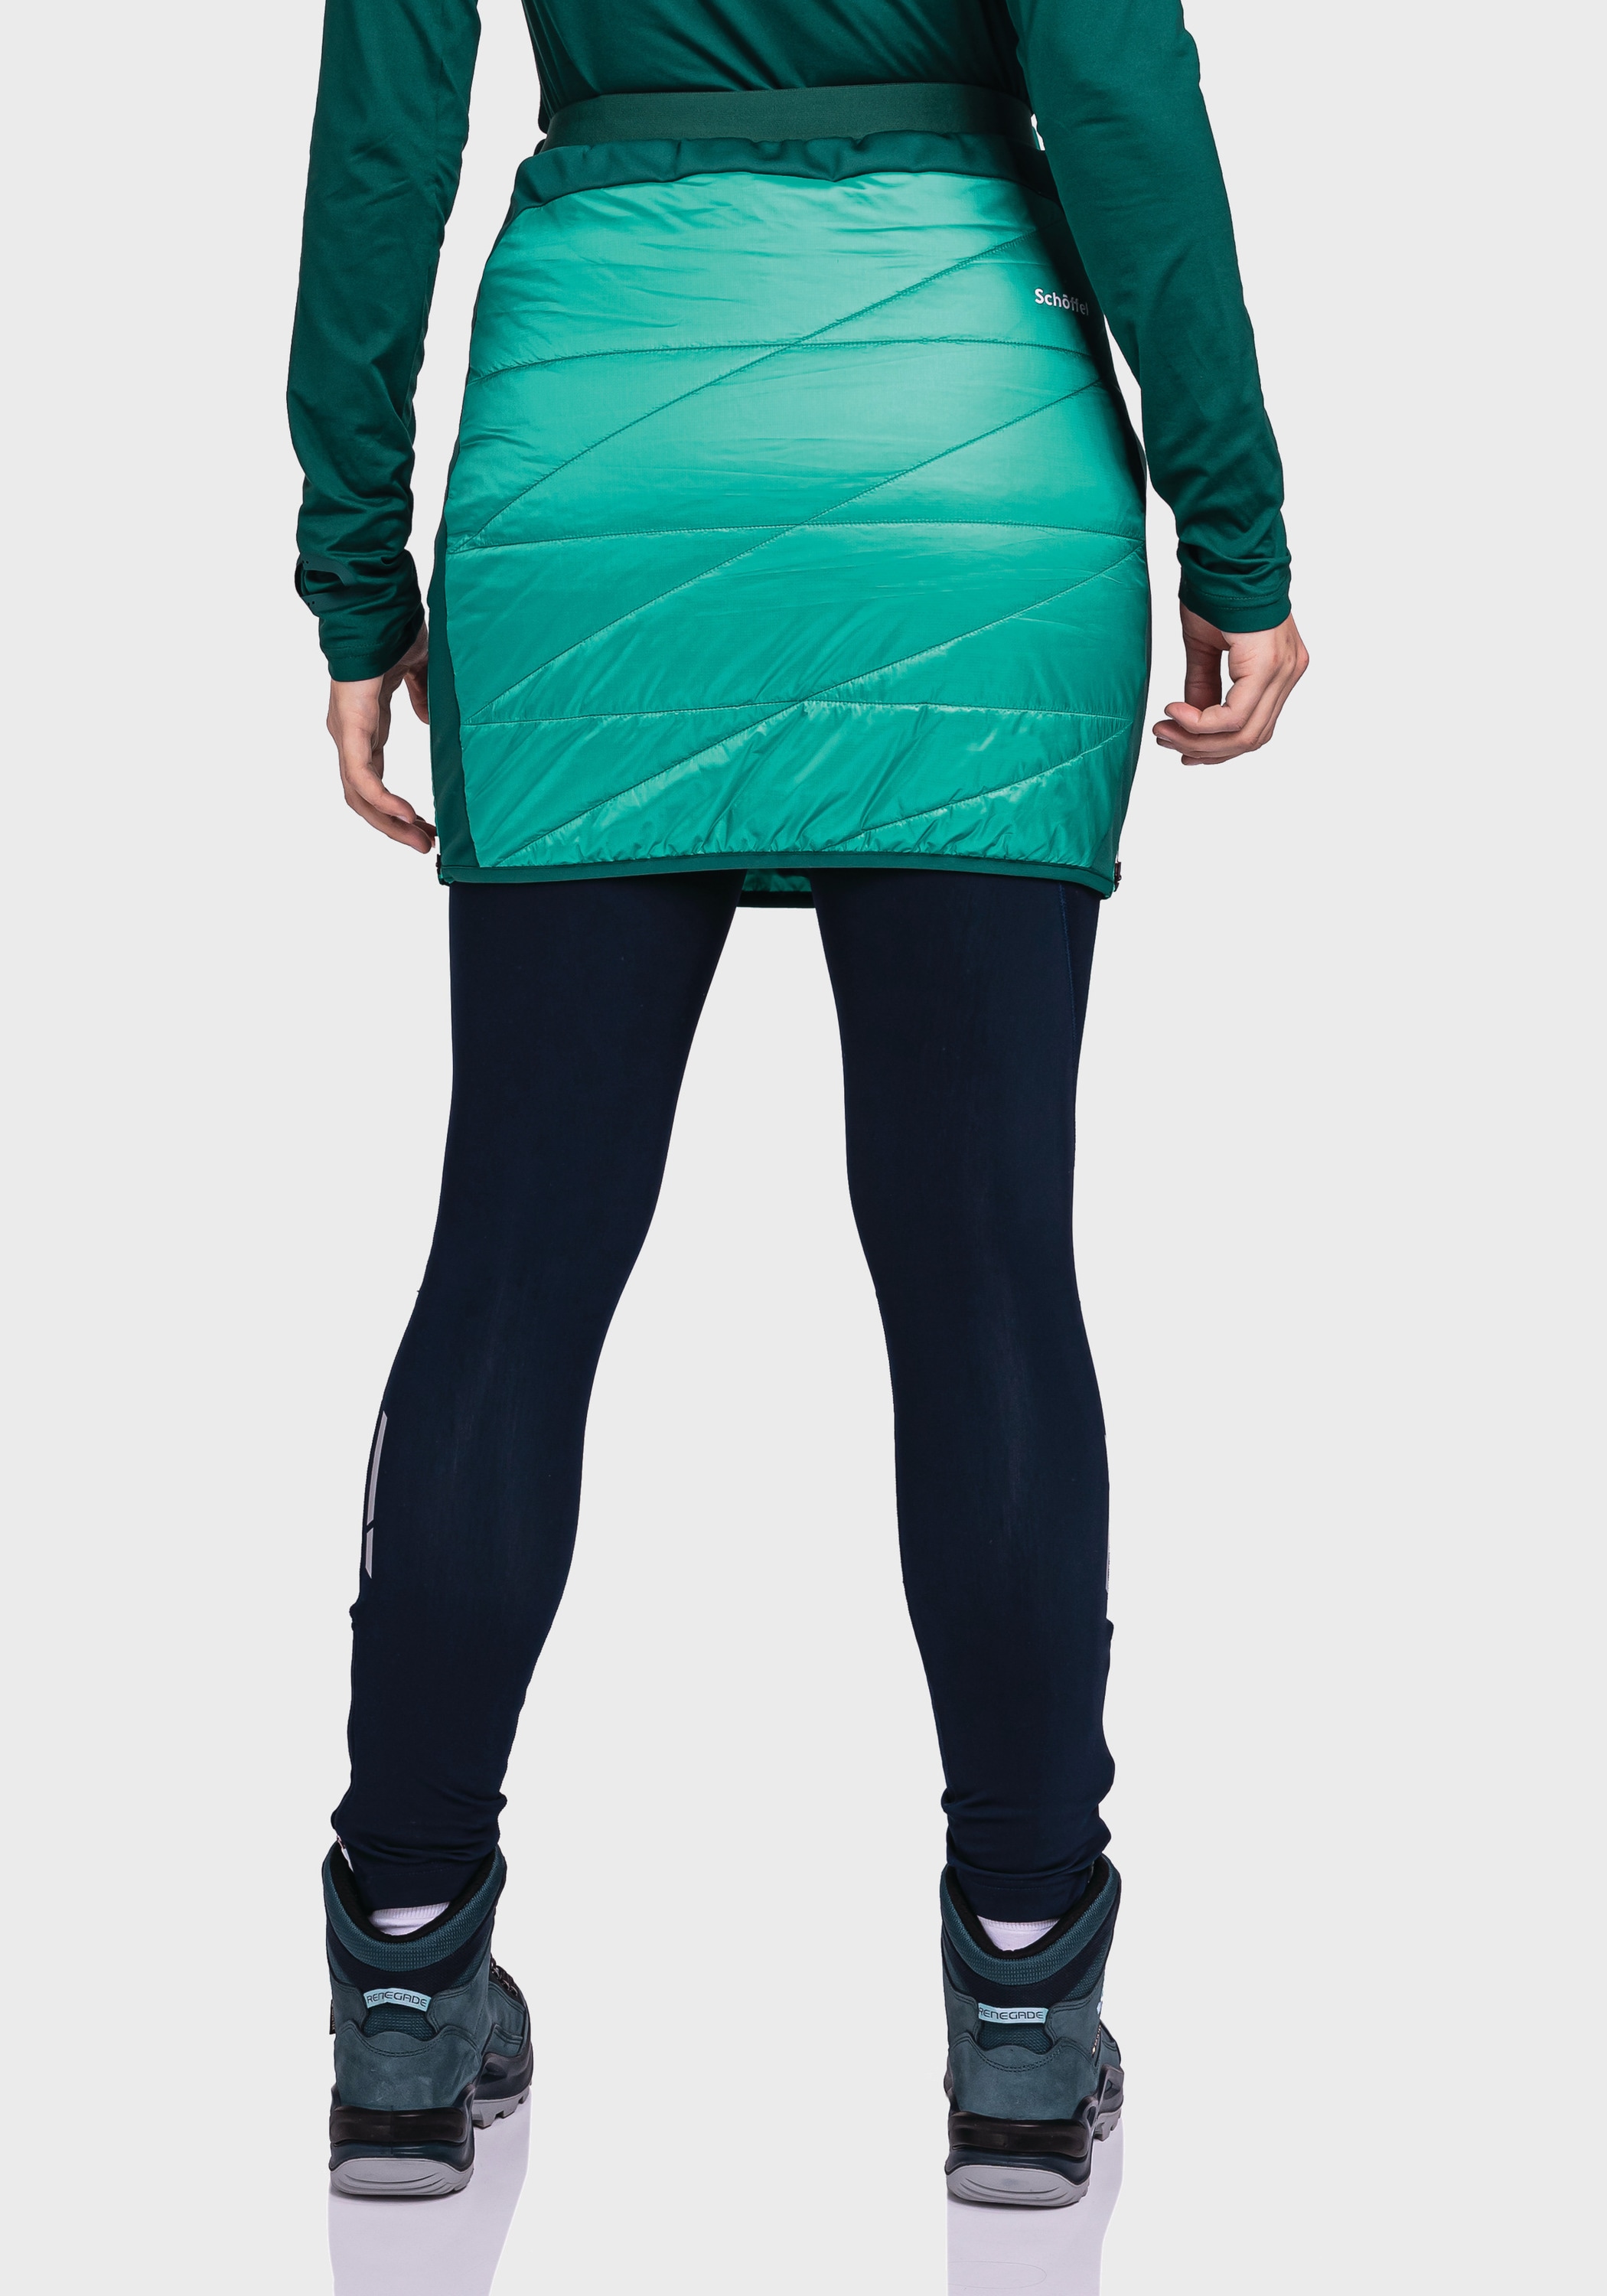 L« Schöffel Skirt bei »Thermo Stams kaufen Sweatrock OTTO